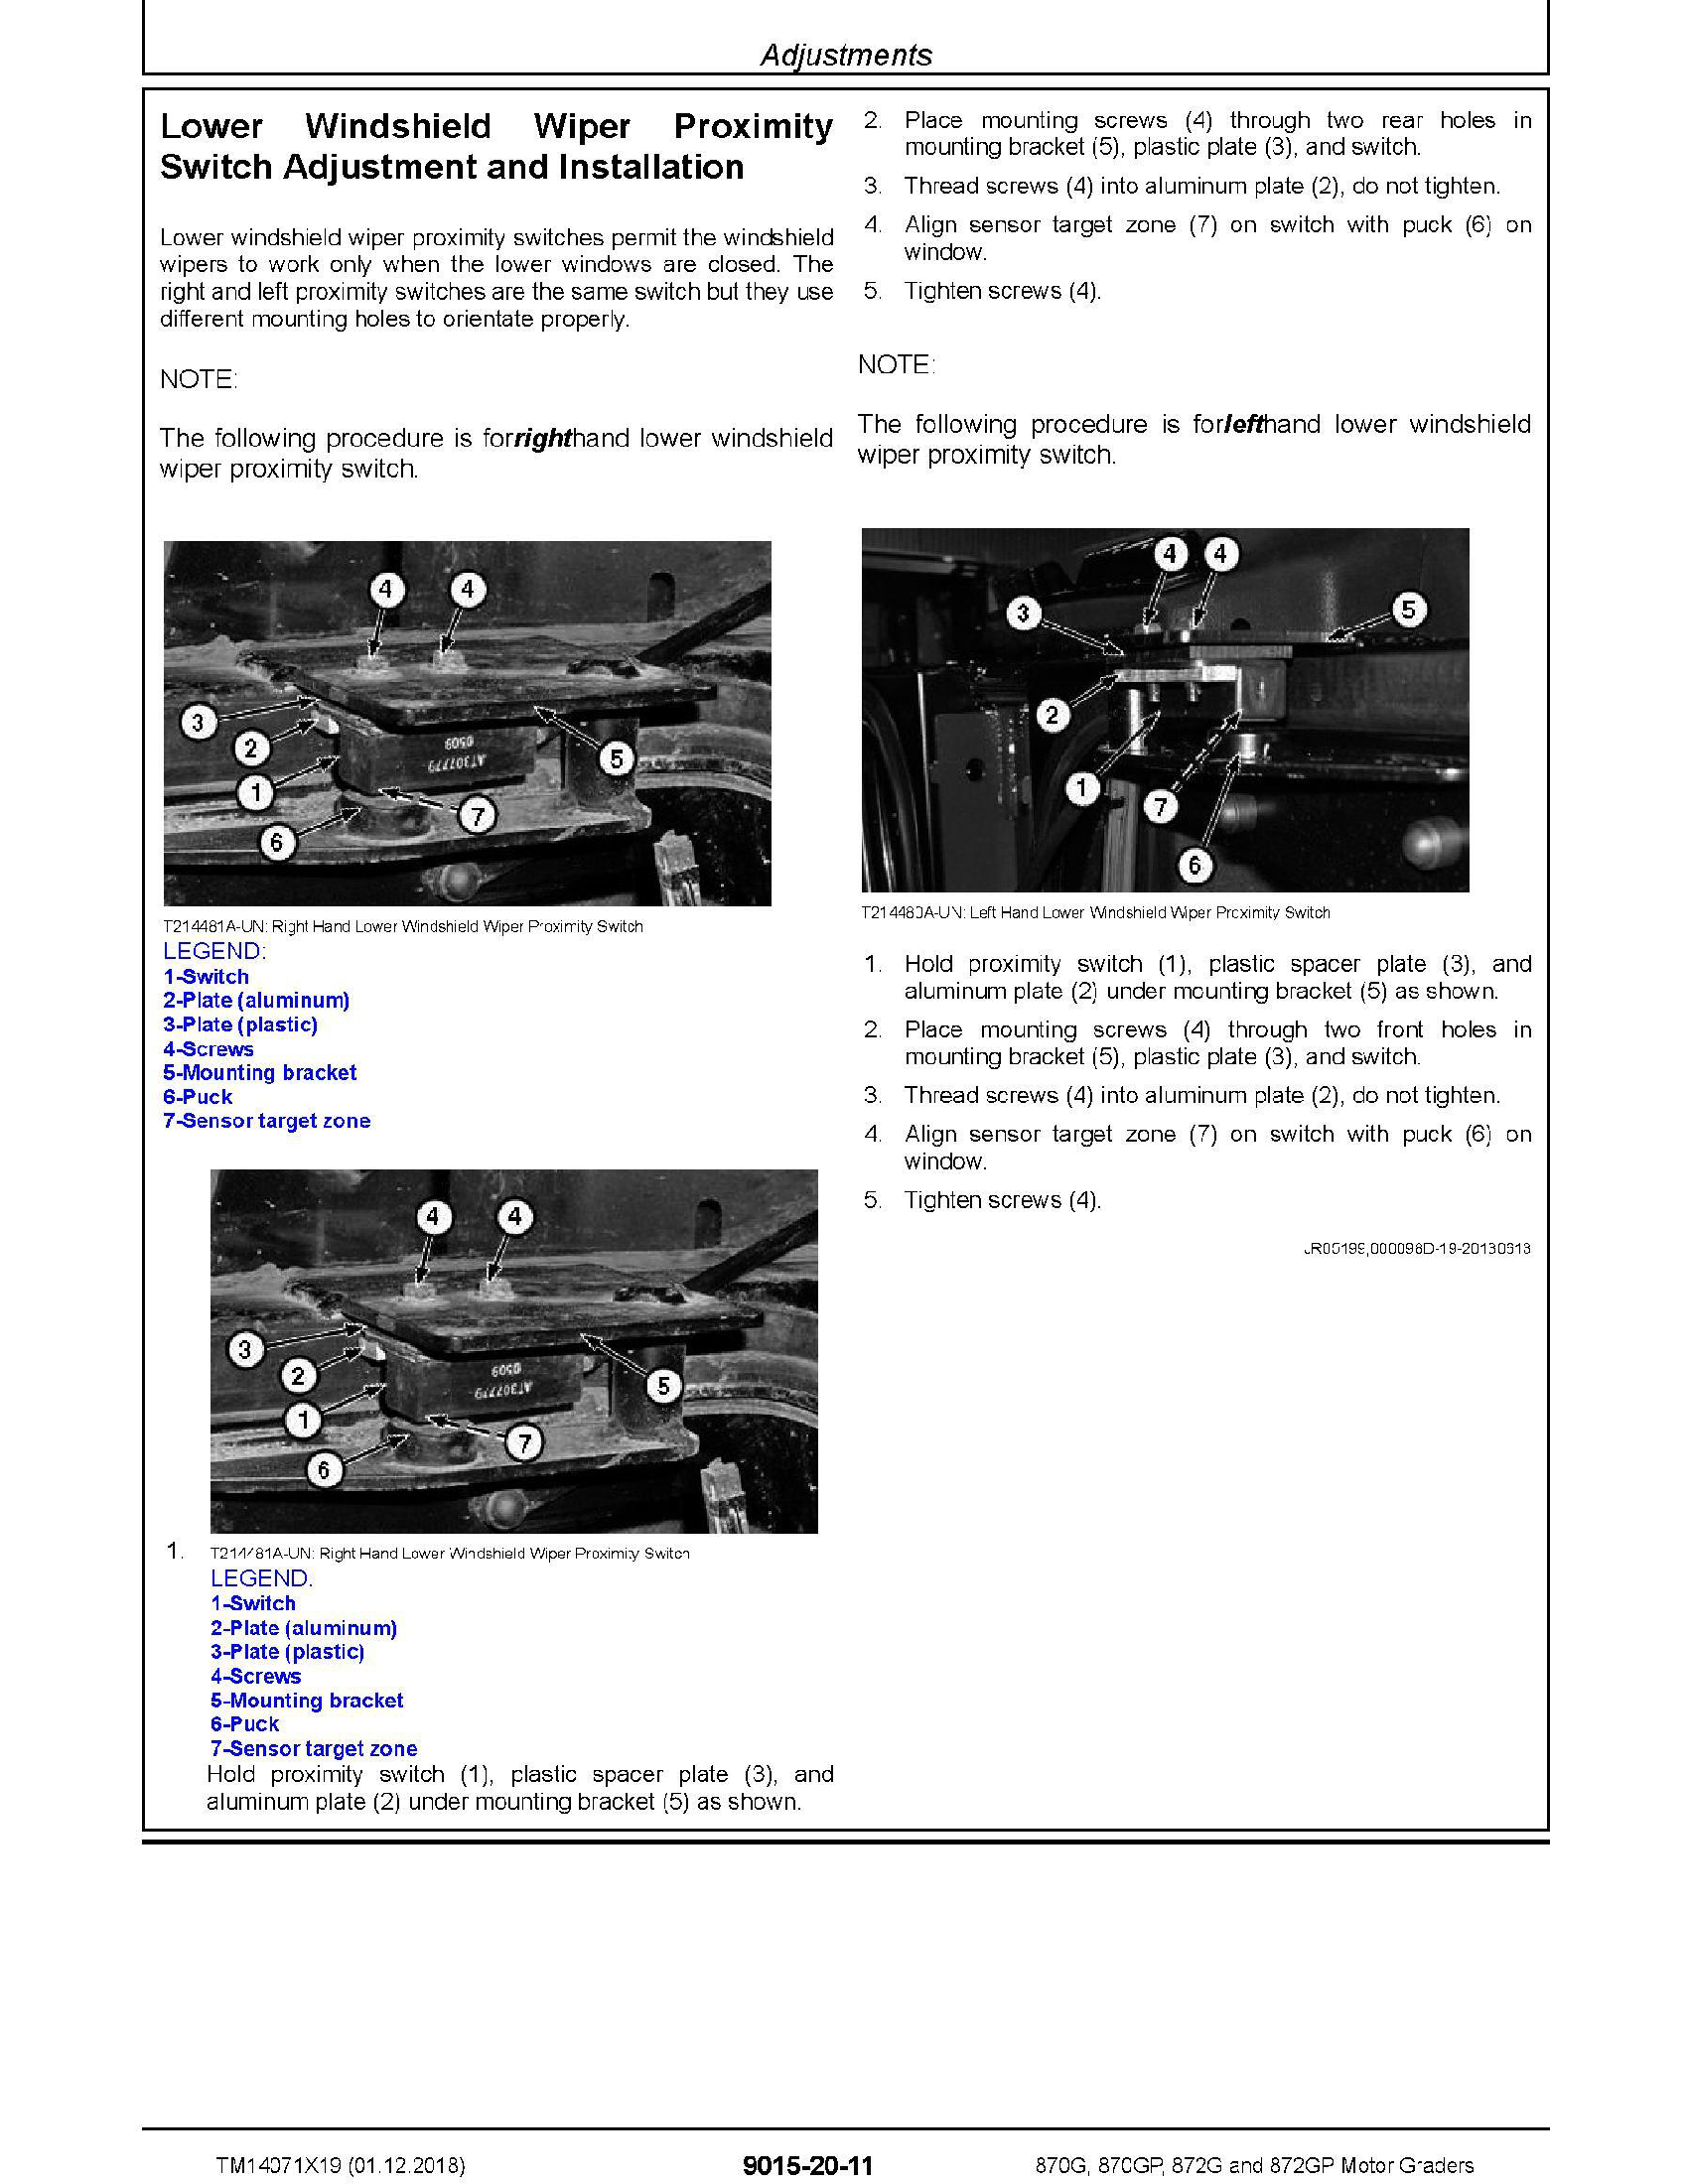 John Deere 1DW872GX manual